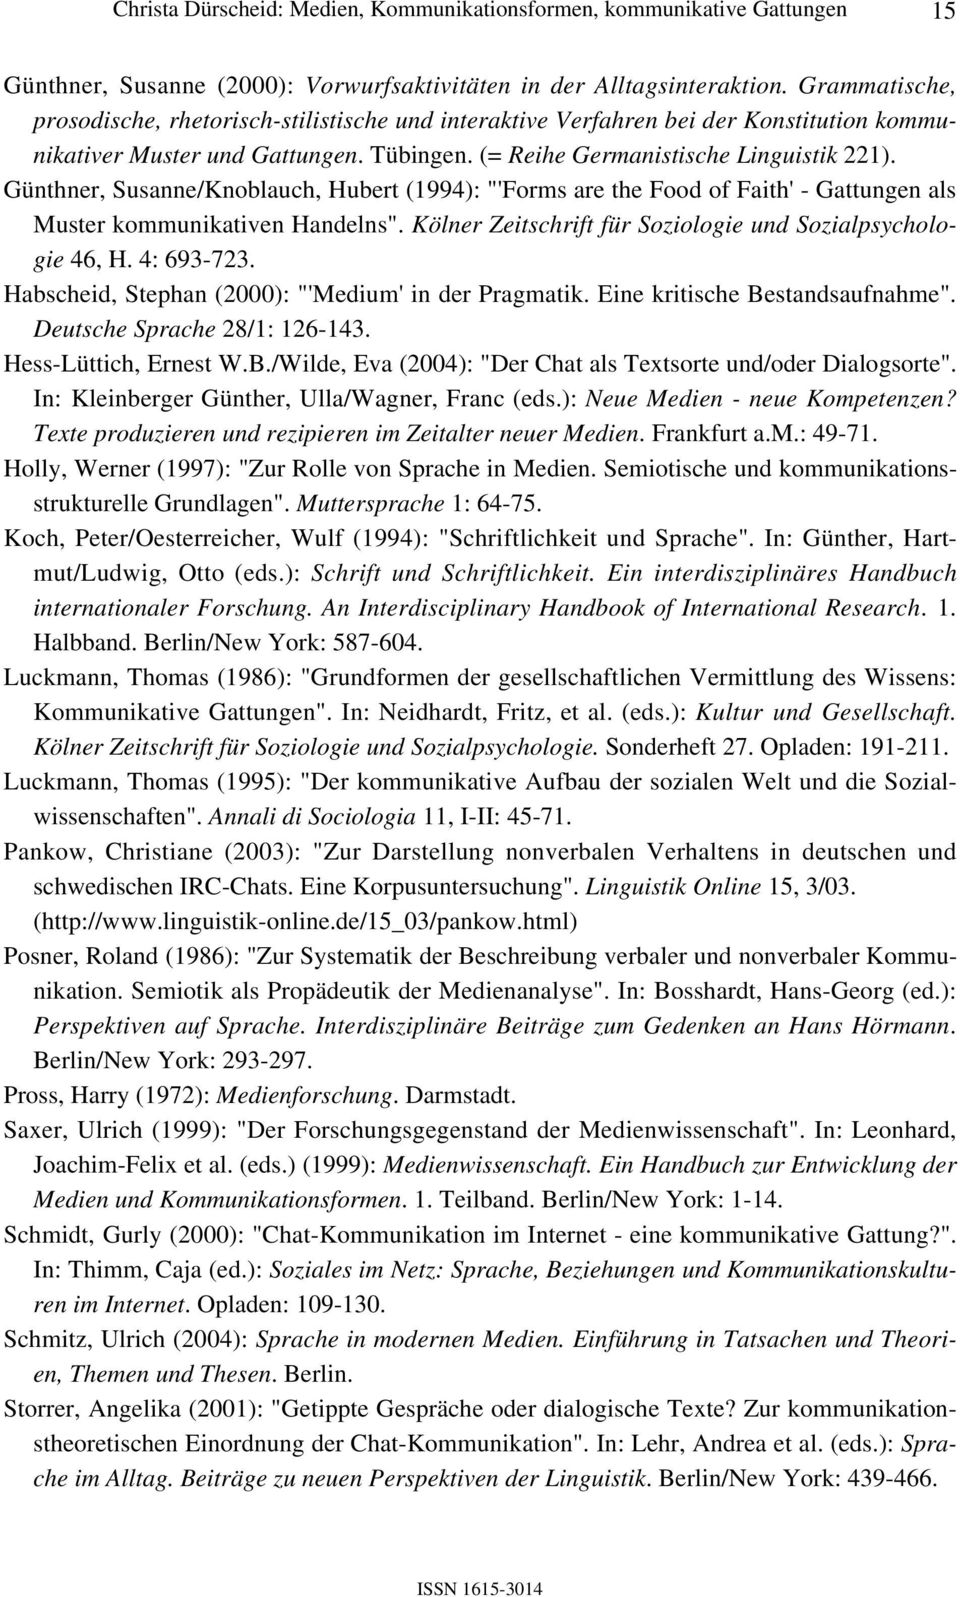 Günthner, Susanne/Knoblauch, Hubert (1994): "'Forms are the Food of Faith' - Gattungen als Muster kommunikativen Handelns". Kölner Zeitschrift für Soziologie und Sozialpsychologie 46, H. 4: 693-723.